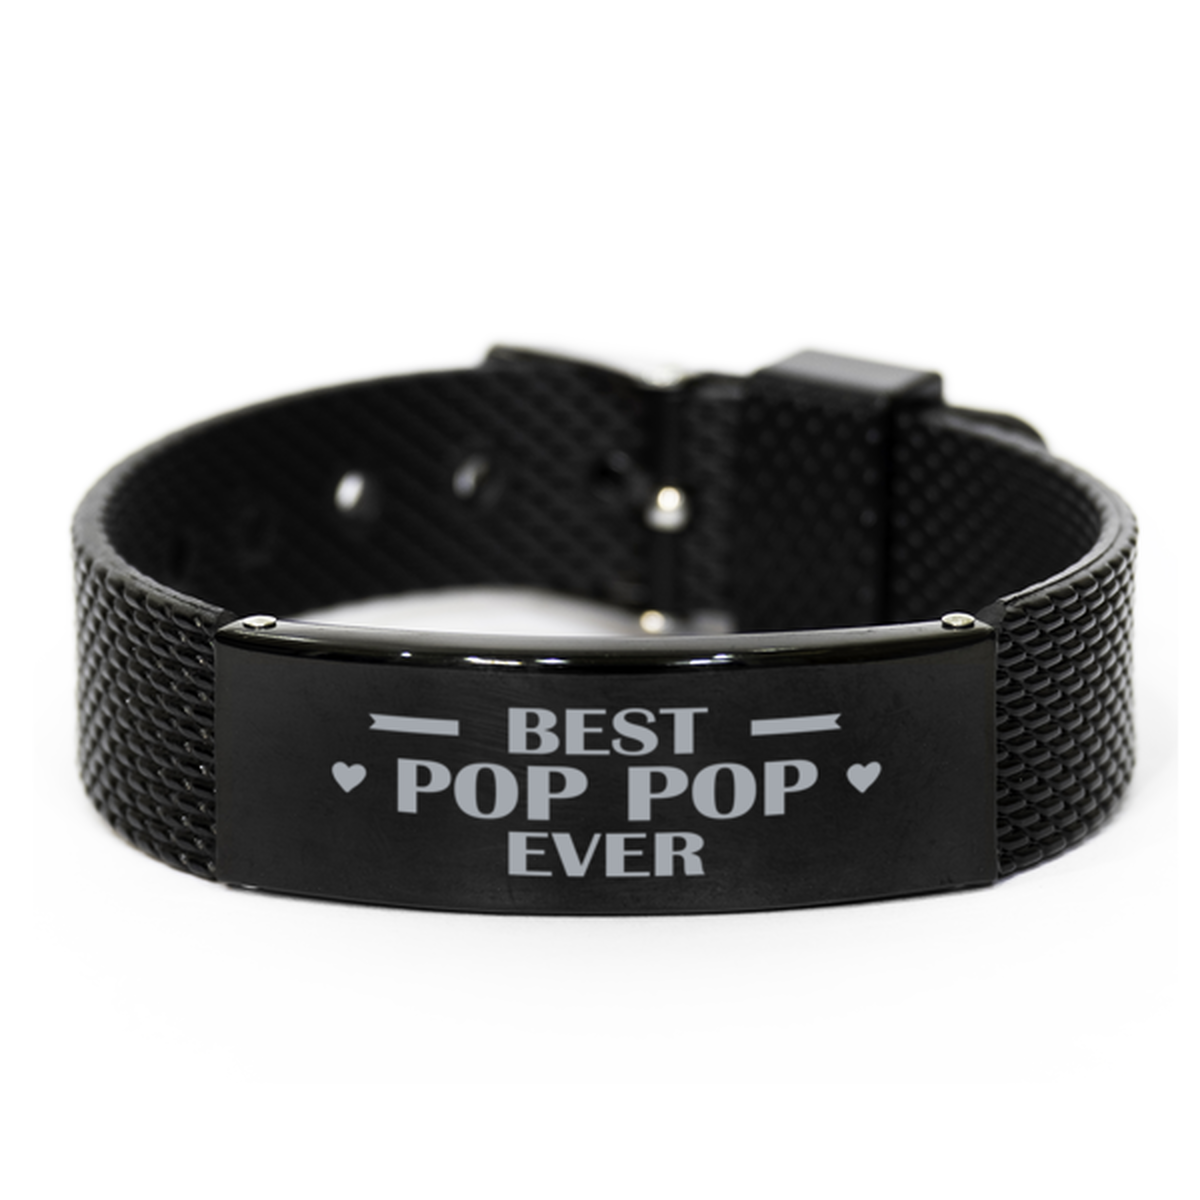 Best Pop Pop Ever Pop Pop Gifts, Gag Engraved Bracelet For Pop Pop, Best Family Gifts For Men